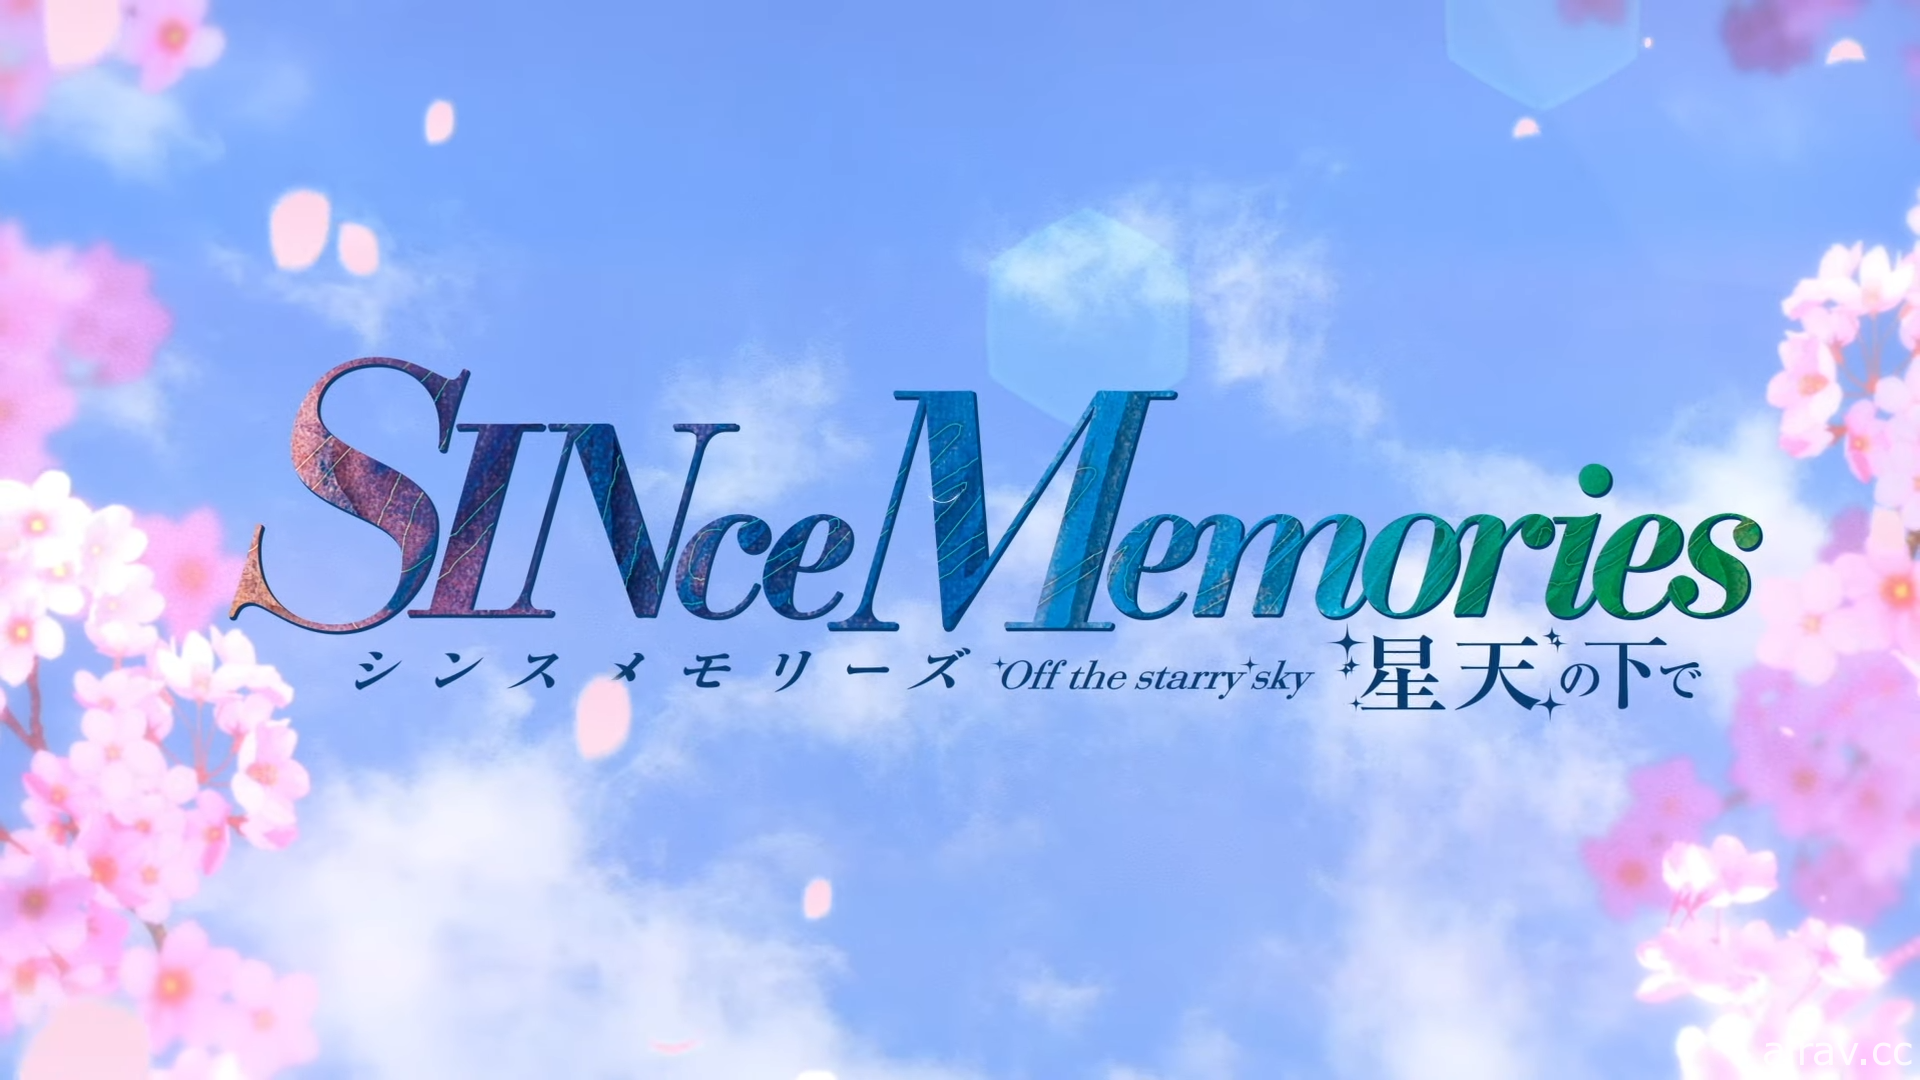 《告別回憶》衍生作《SINce Memories 星穹之下》公開片頭影片 發售日延期至 9 月